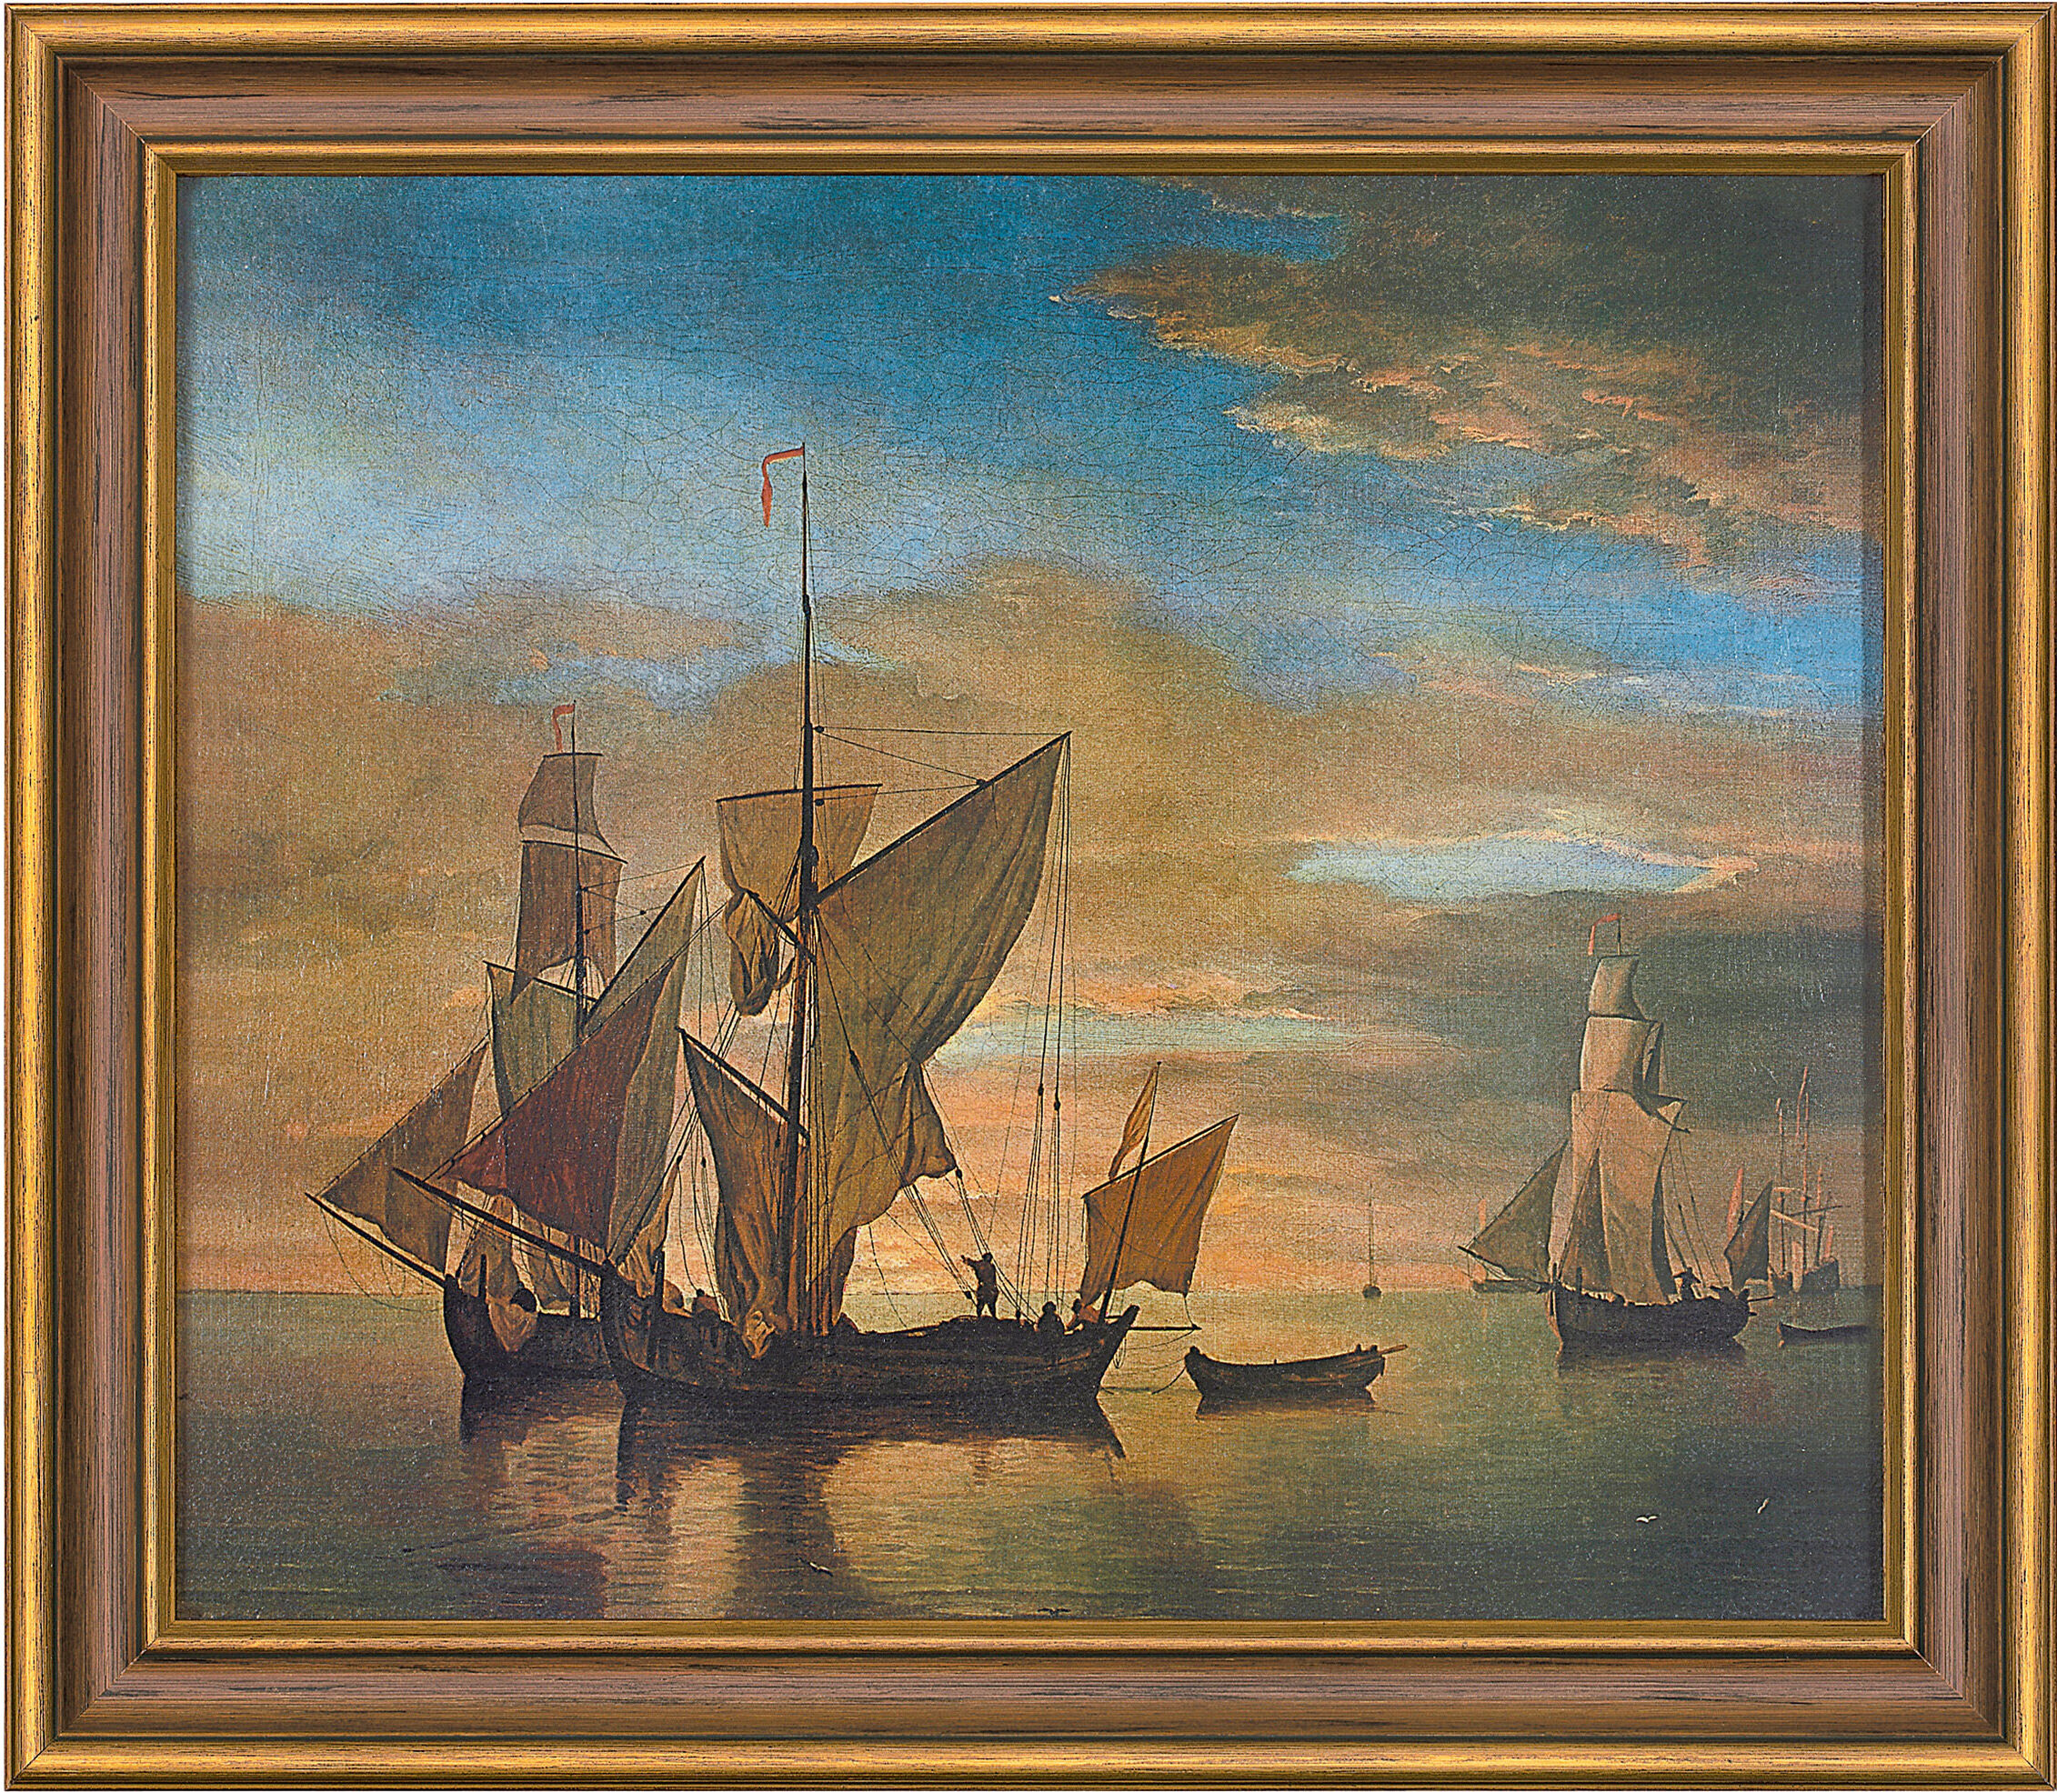 Billede "Skibe på et roligt hav i aftenlys" (1685), indrammet von Willem van de Velde